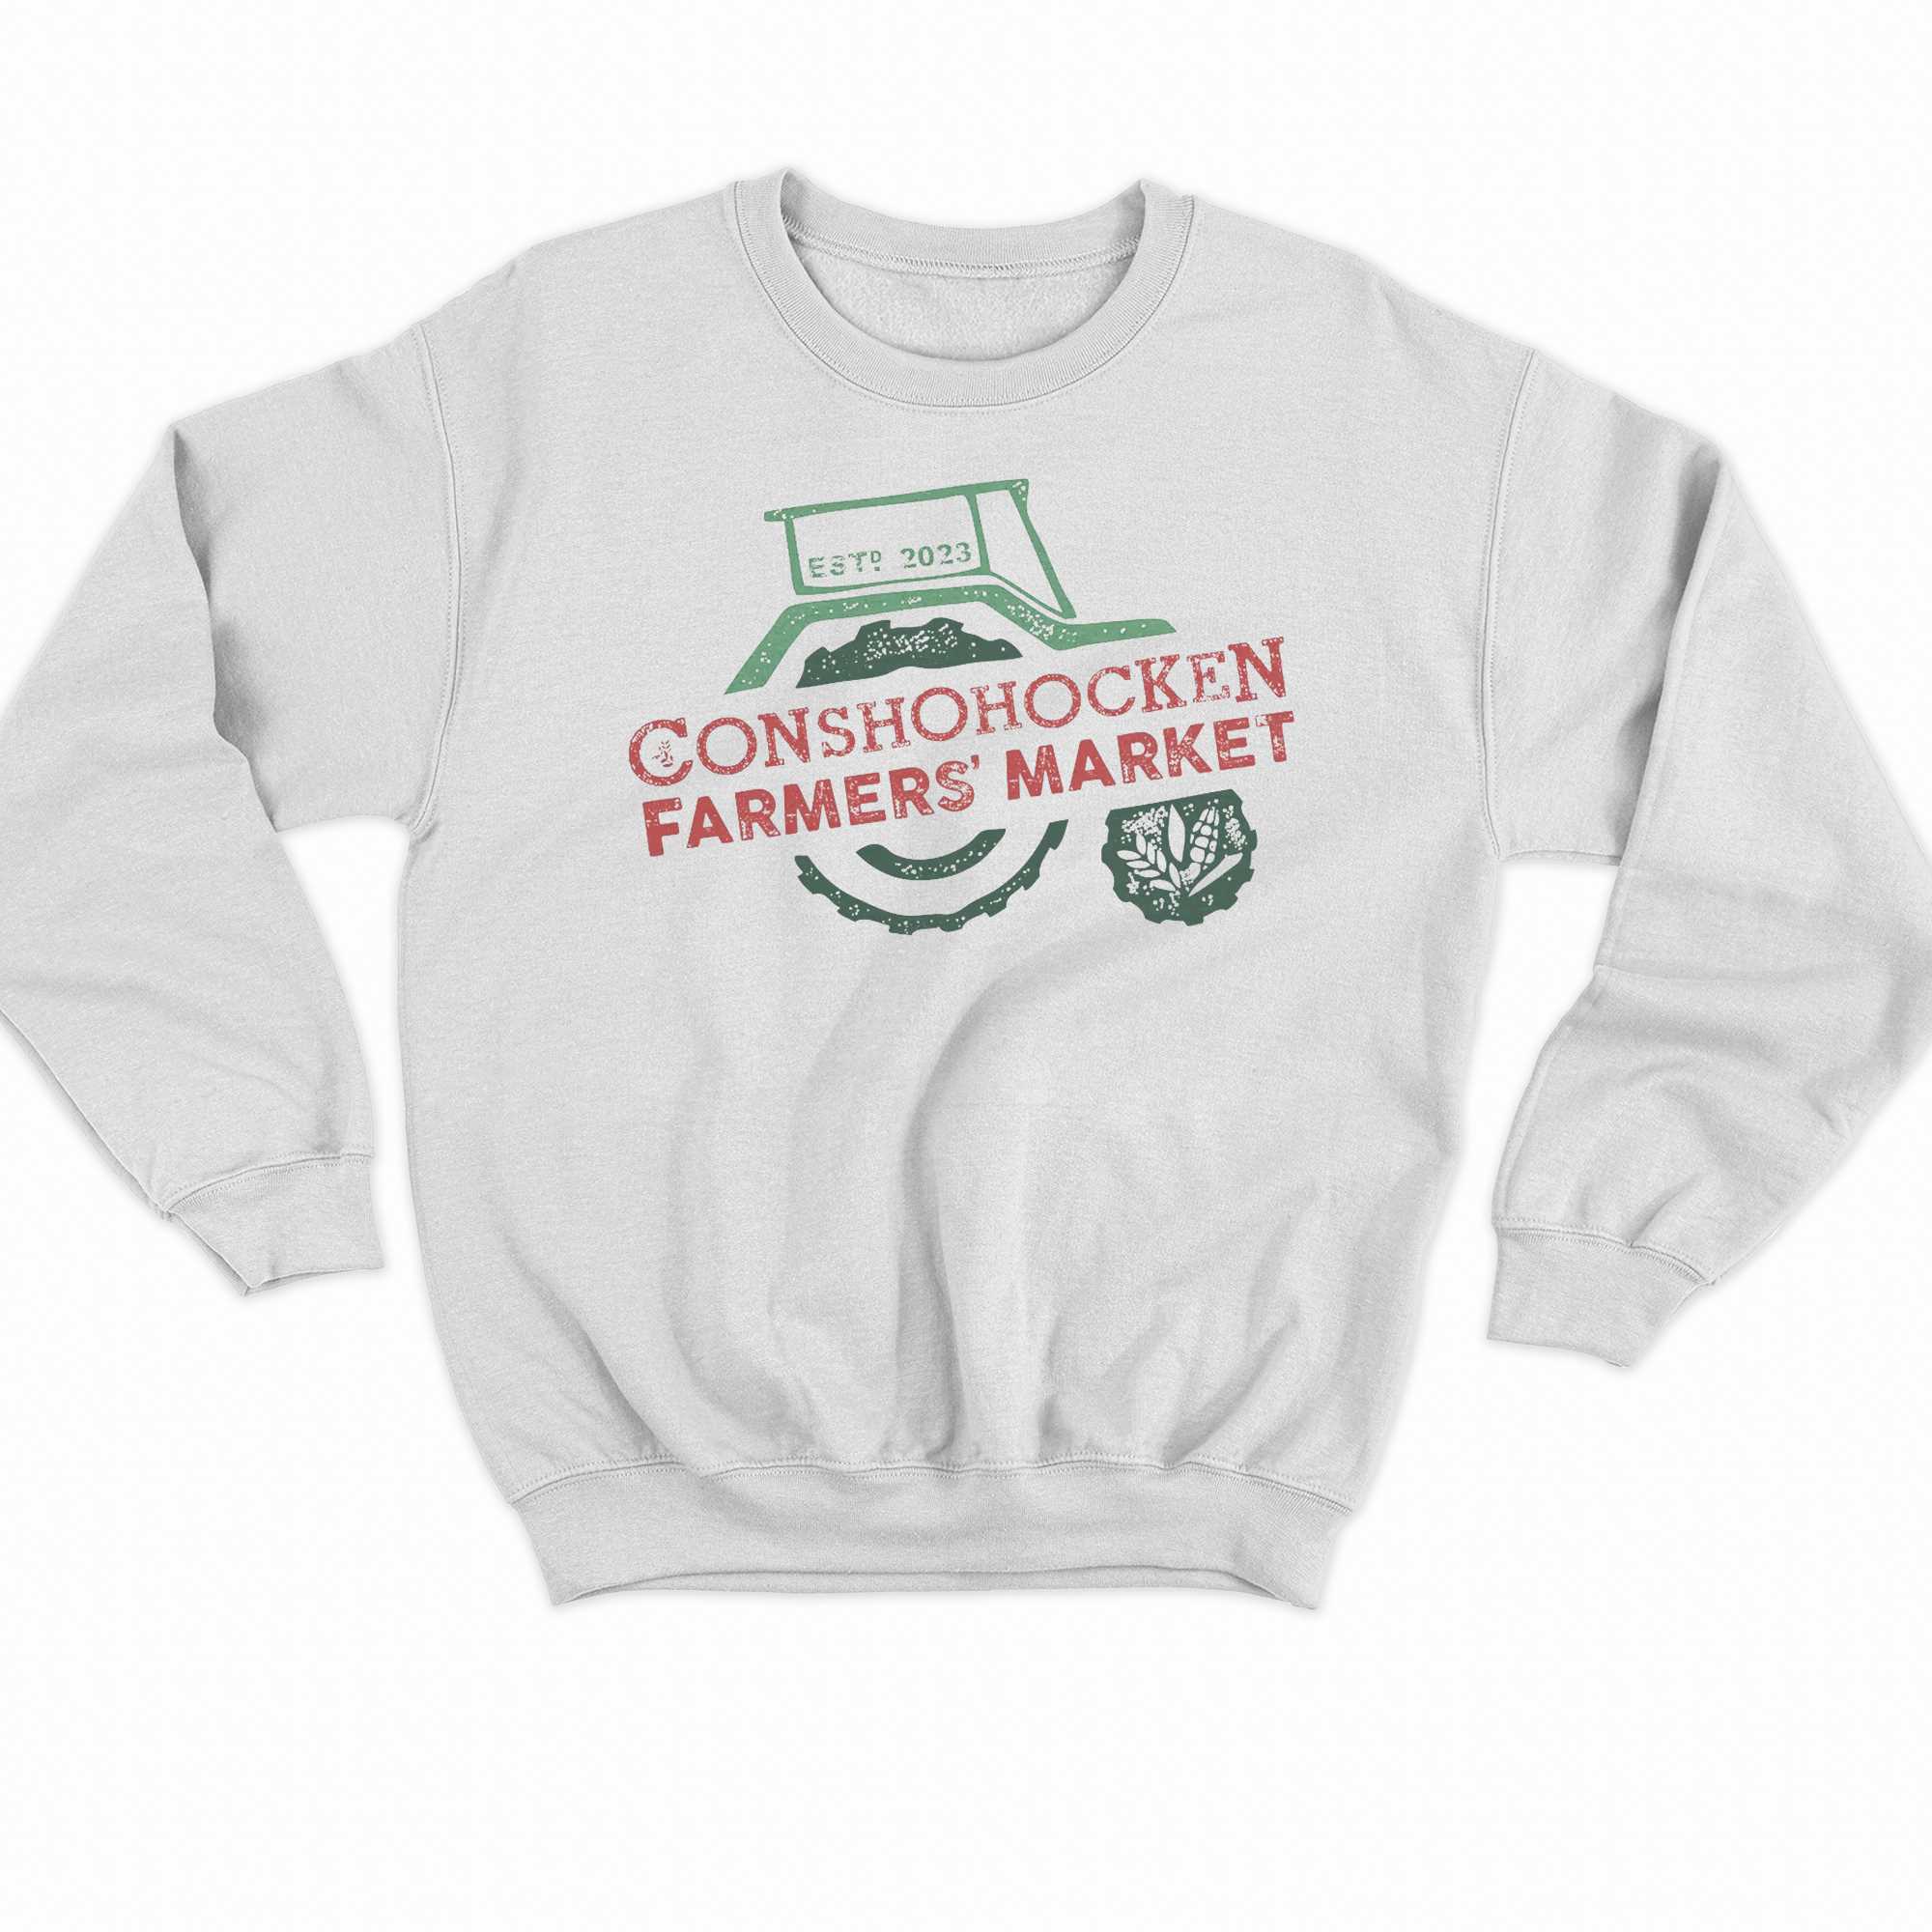 Conshohocken Farmers Market T-shirt 